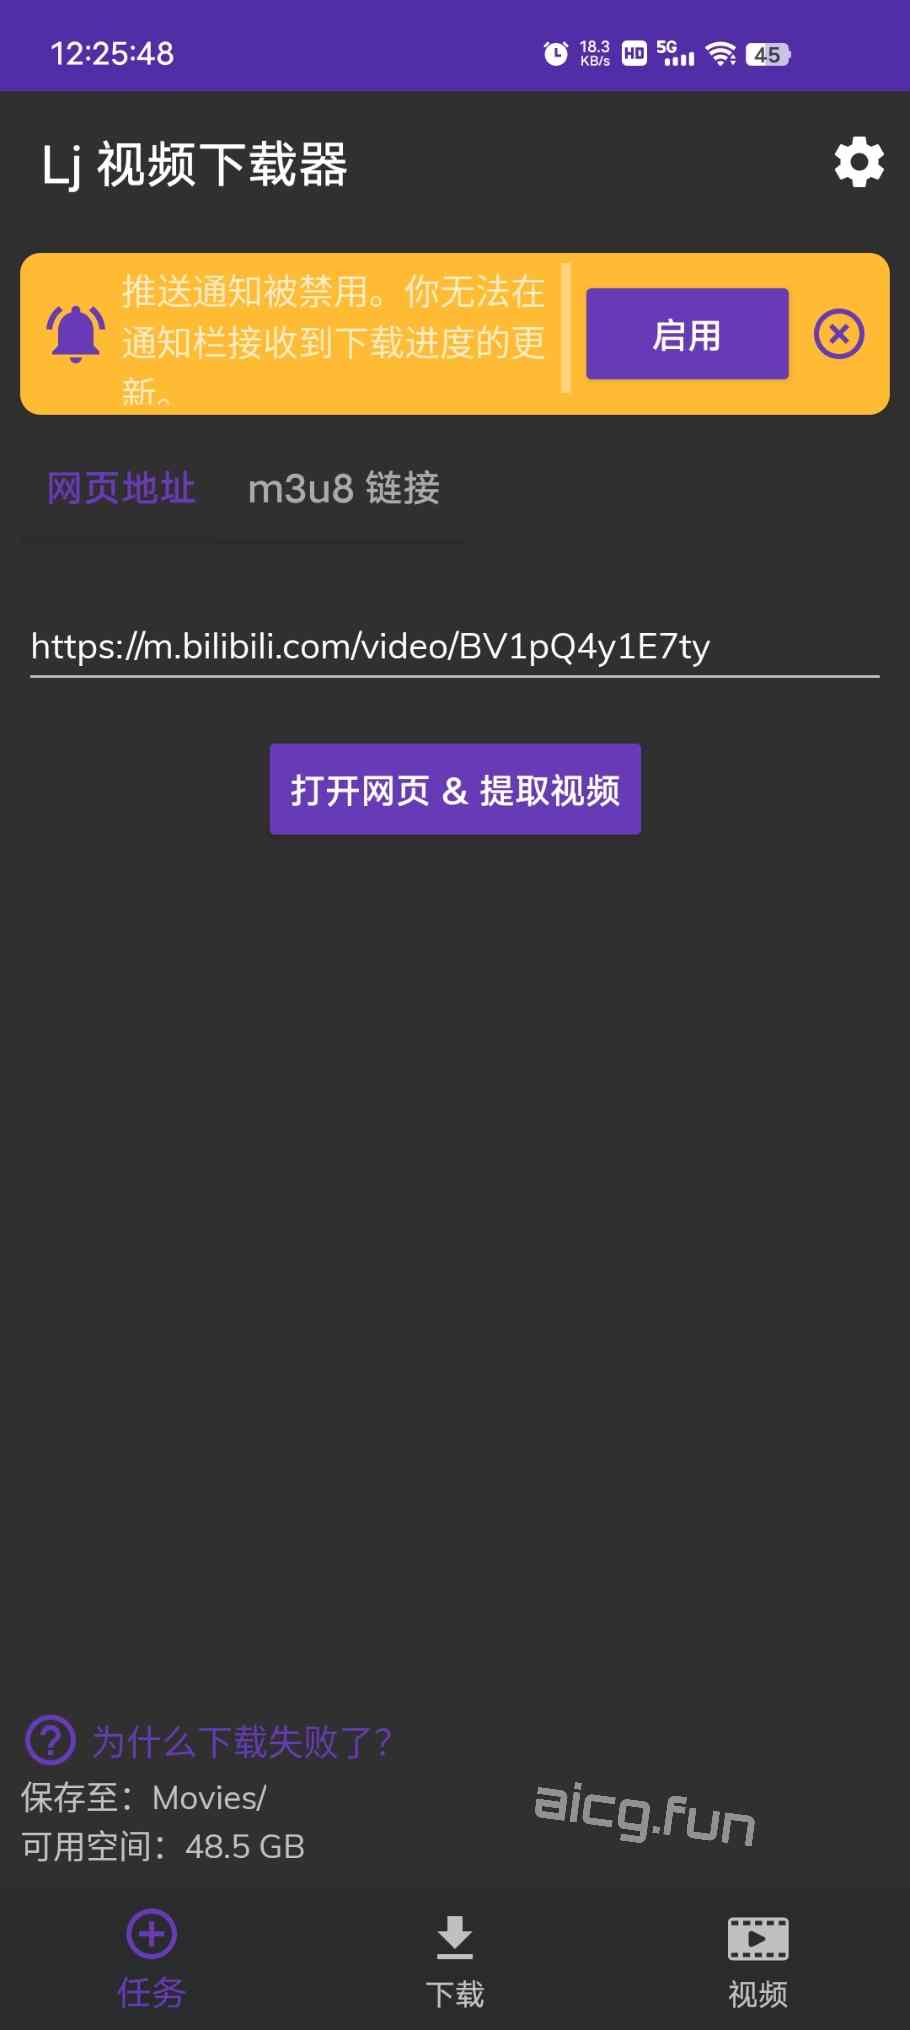 ［12.29更新］Lj视频下载器 v1.1.45 去广告纯净版-凌貓博客